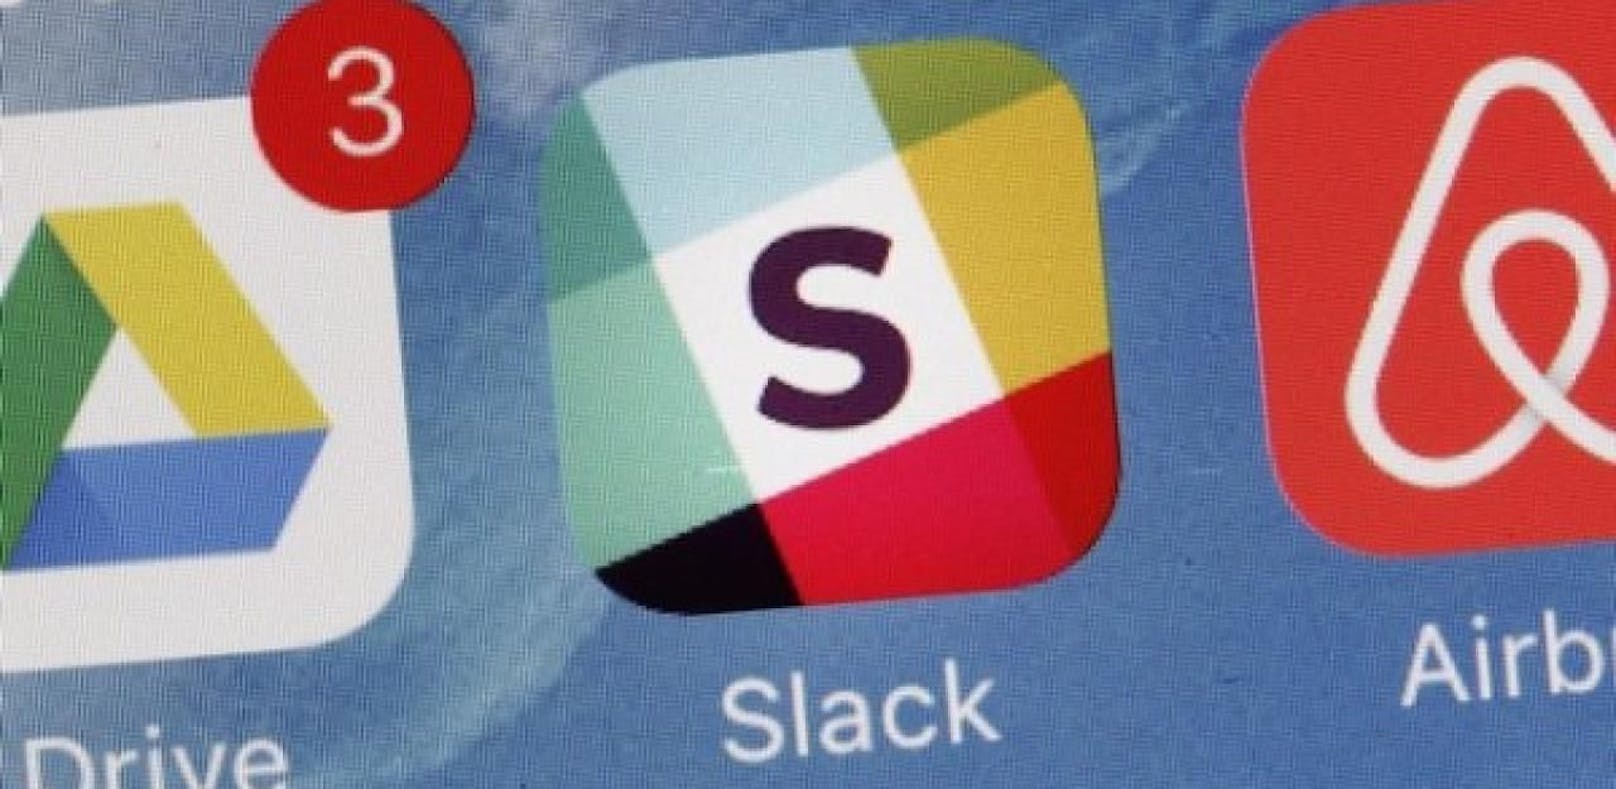 Die 2013 veröffentlichte Chat-App Slack wird täglich von zehn Millionen Mitarbeitern genutzt.&nbsp;